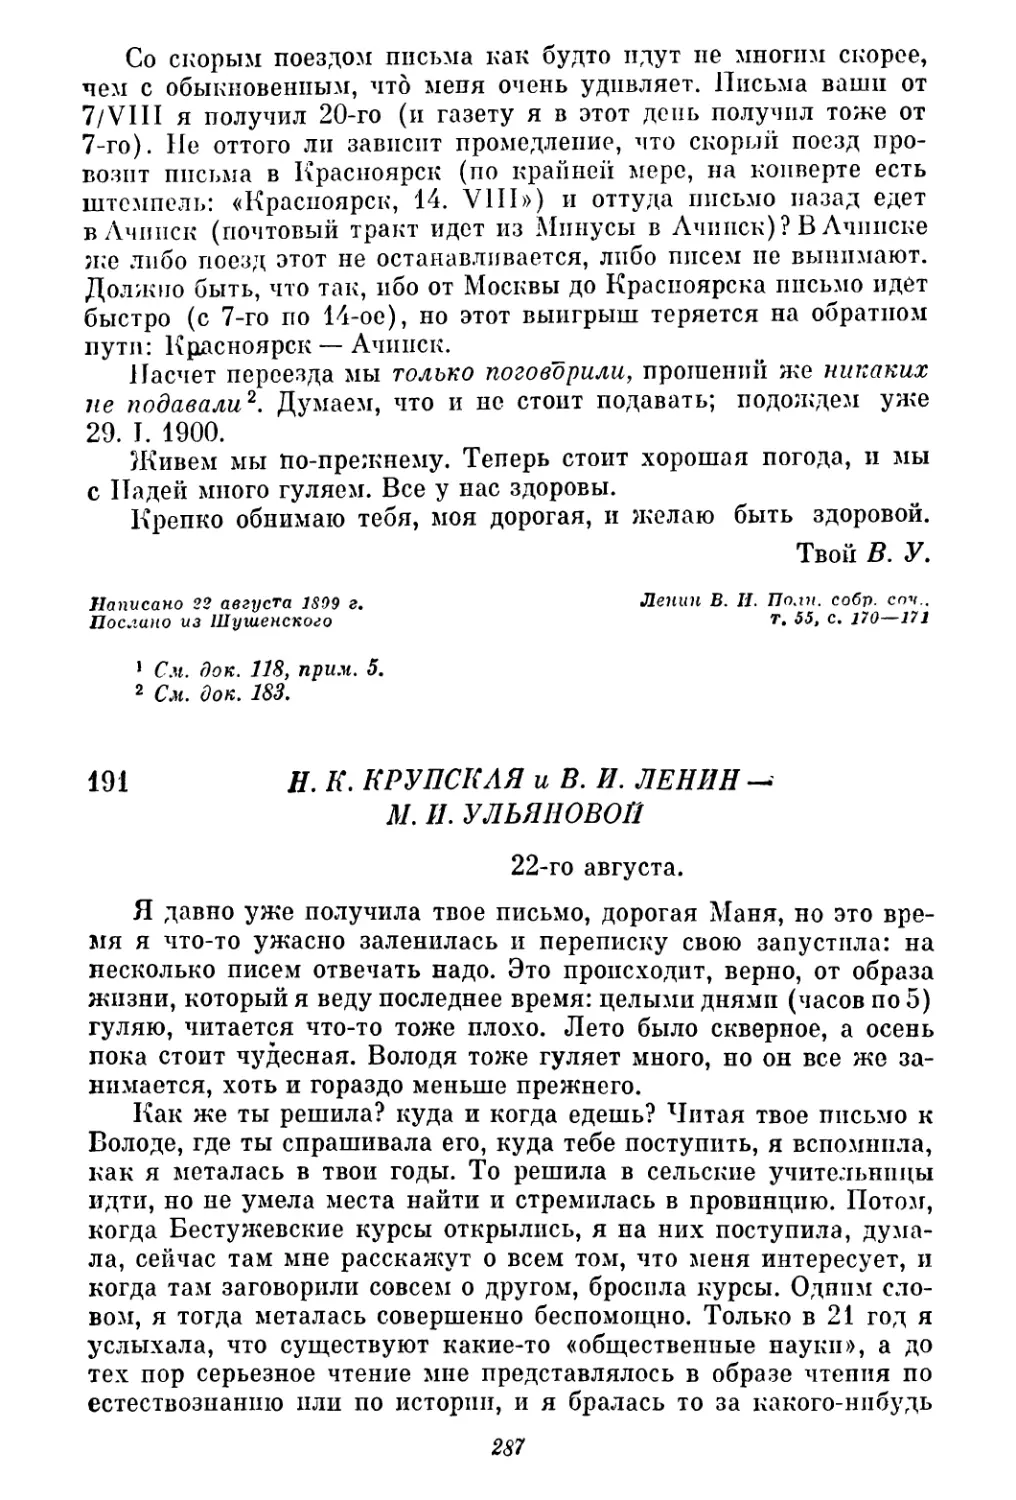 191. Н. К. Крупская и В. И. Ленин — М. И. Ульяновой. 22 августа.